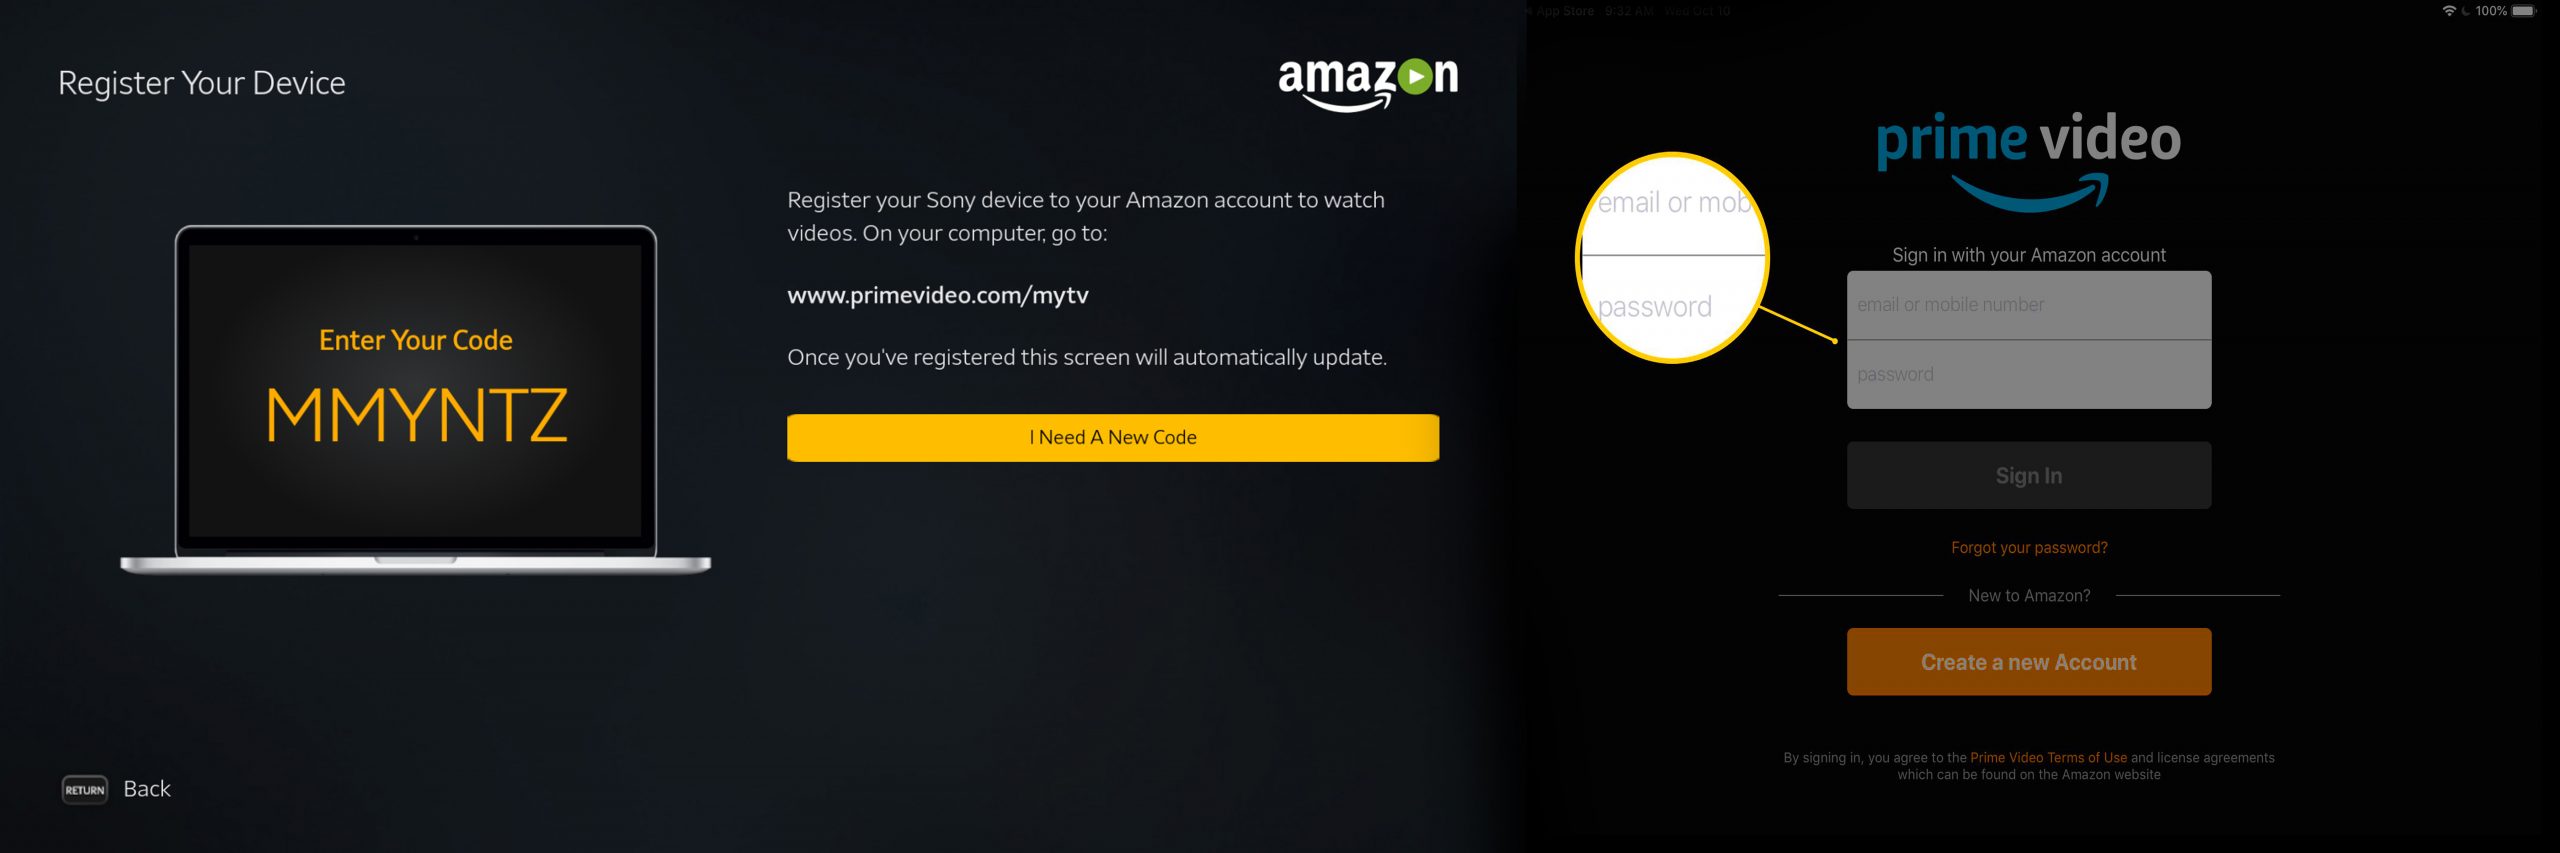 Amazon.com/mytv - Enter Prime Code - Activate Amazon Prime Video